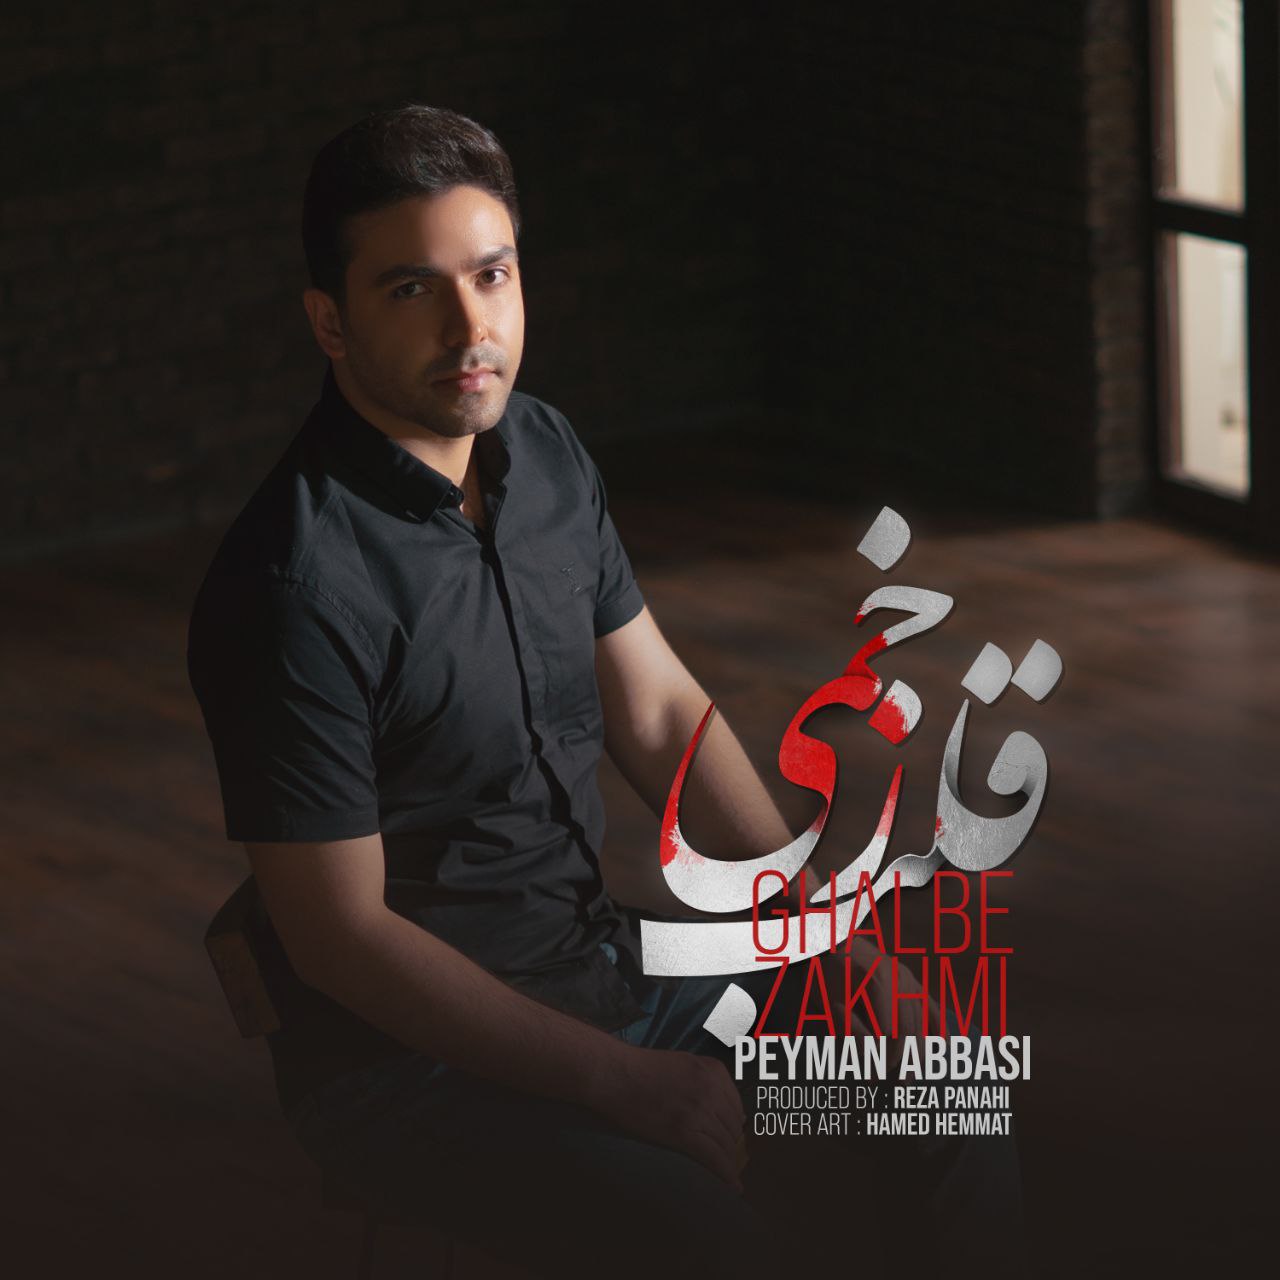 Peyman Abbasi – Ghalbe Zakhmi